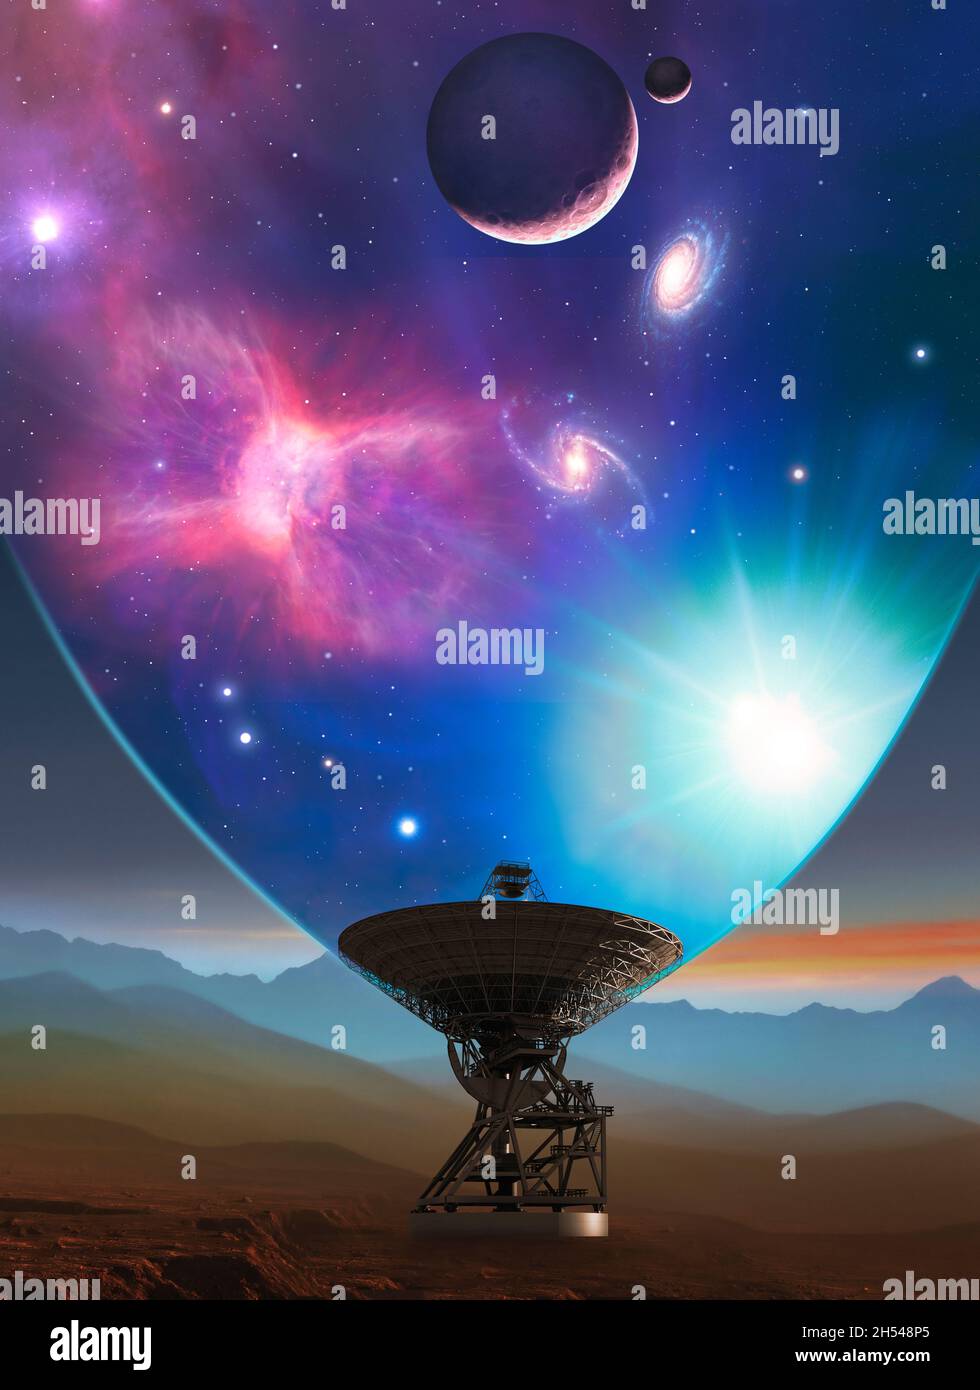 Télescope regardant l'univers, illustration Banque D'Images